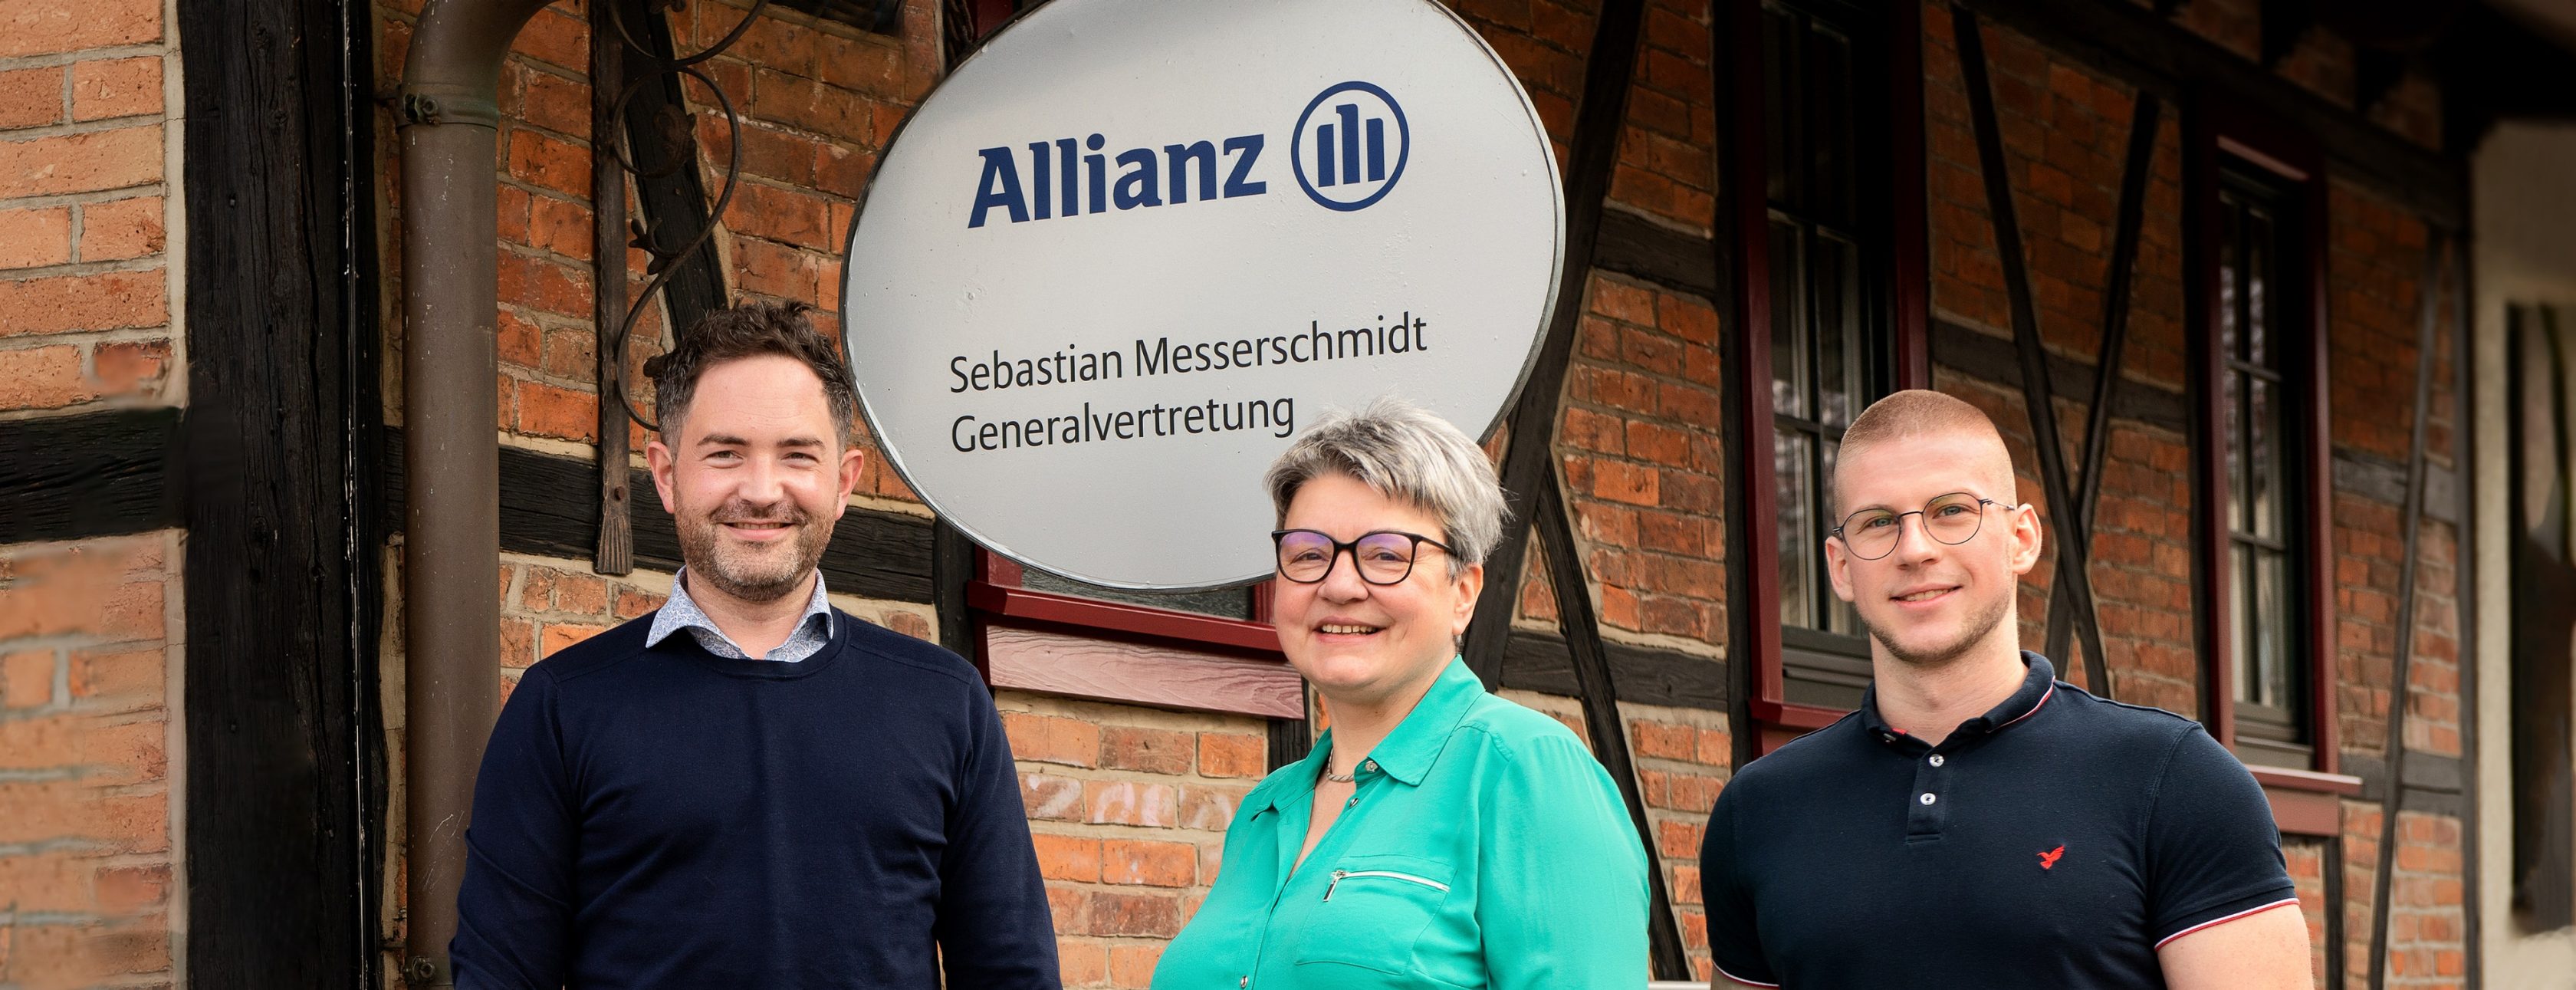 Allianz Versicherung Sebastian Messerschmidt Breitungen - #Allianz #Messerschmidt #Breitungen #Versicherung